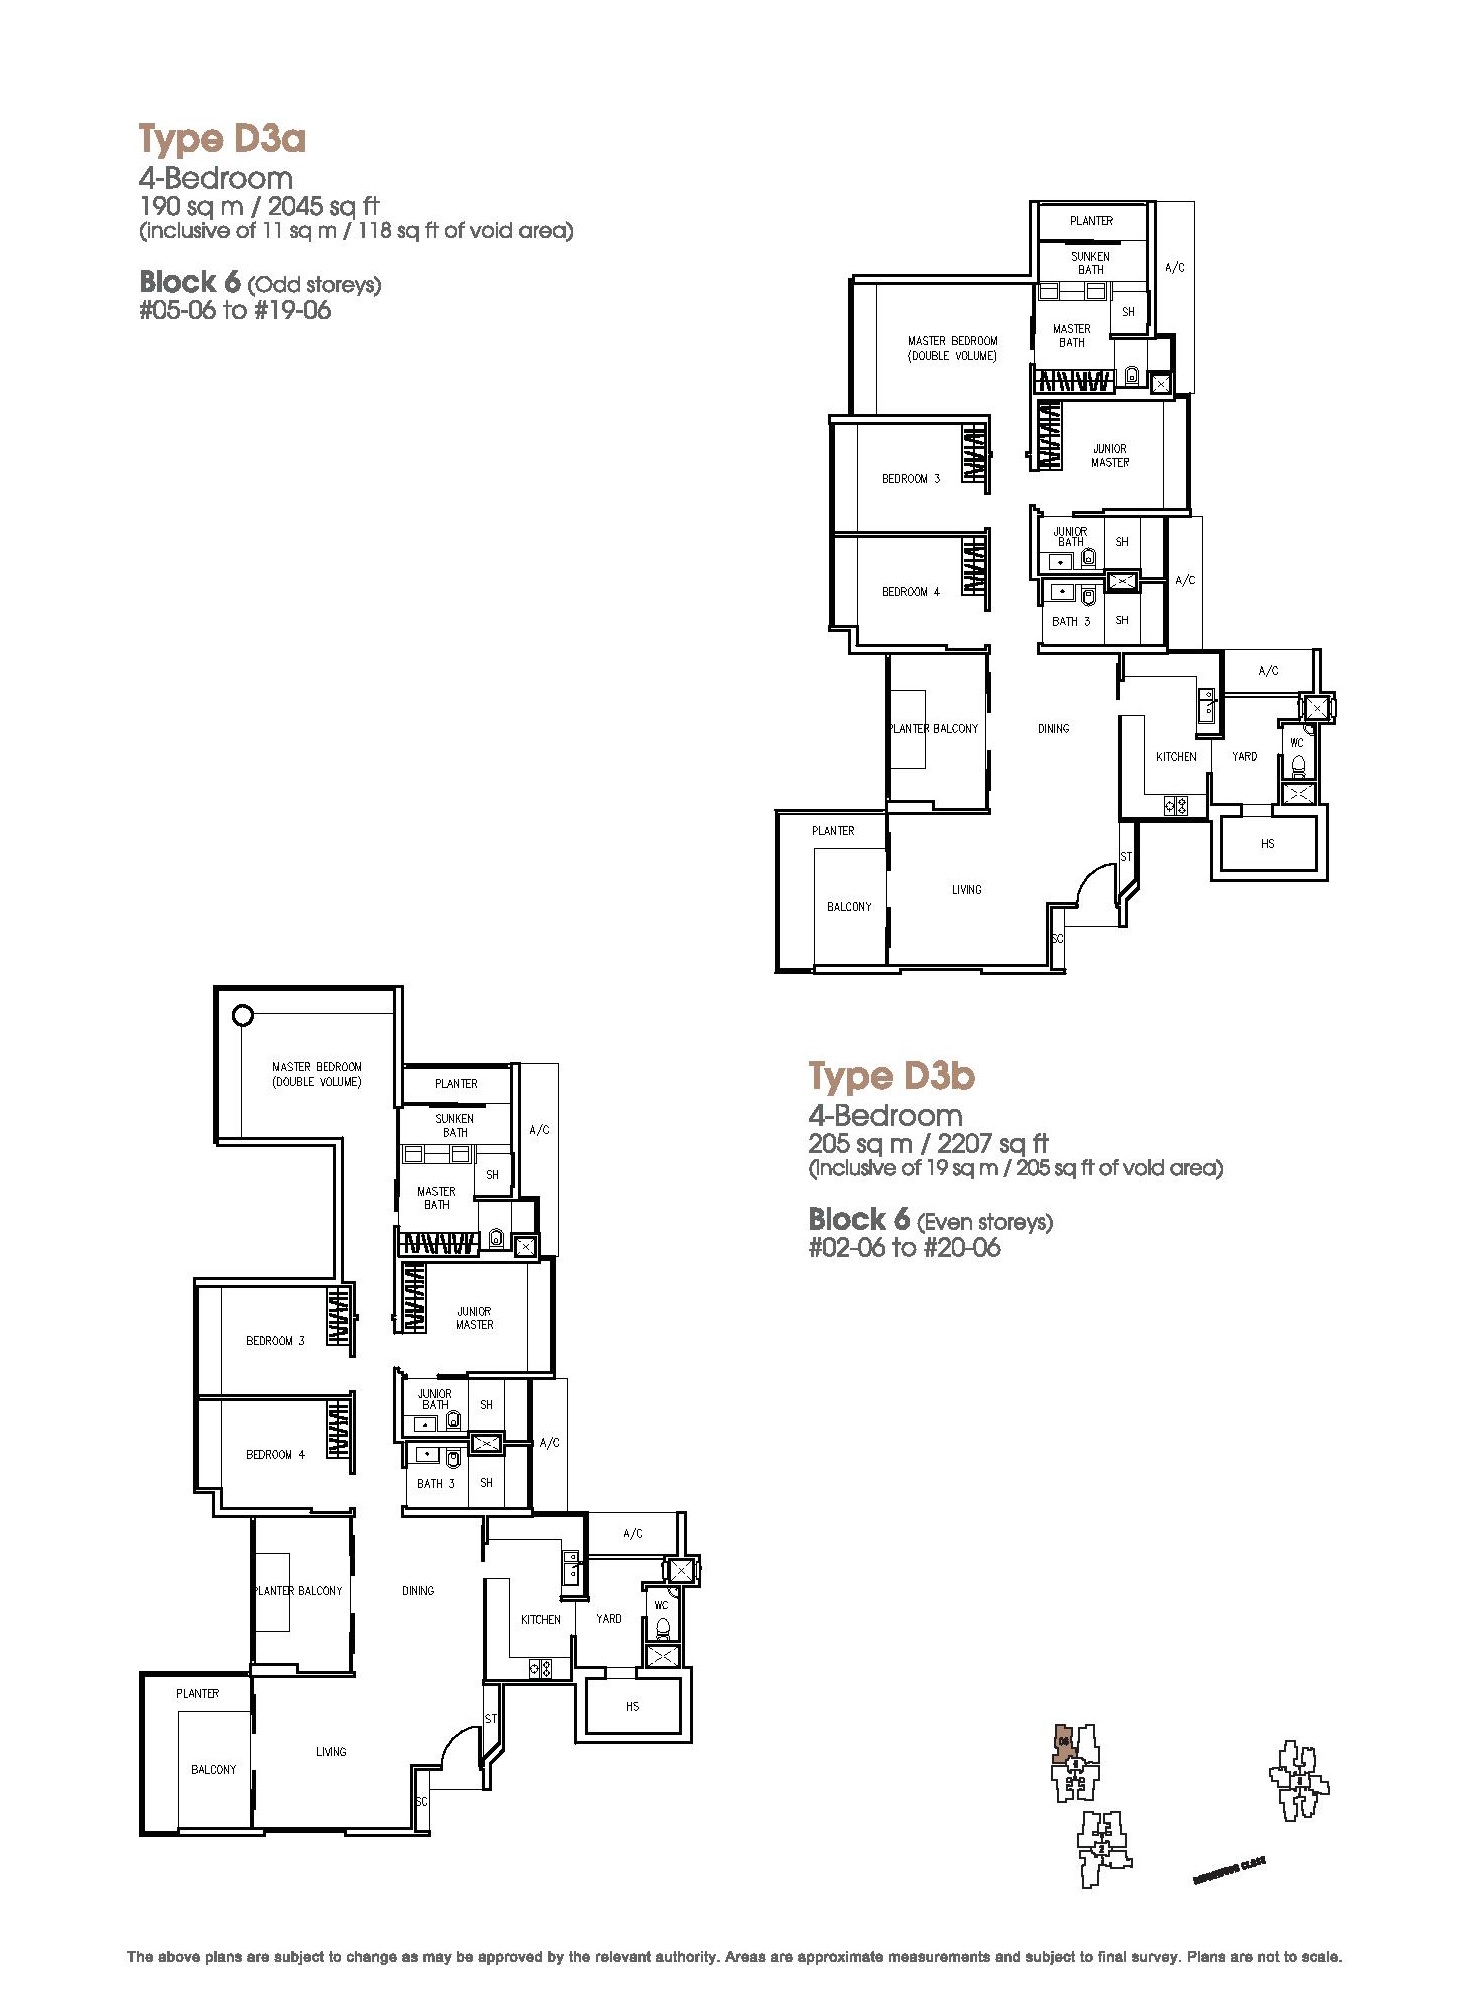 The Trizon 4 Bedroom Floor Plans Type D3a, D3b